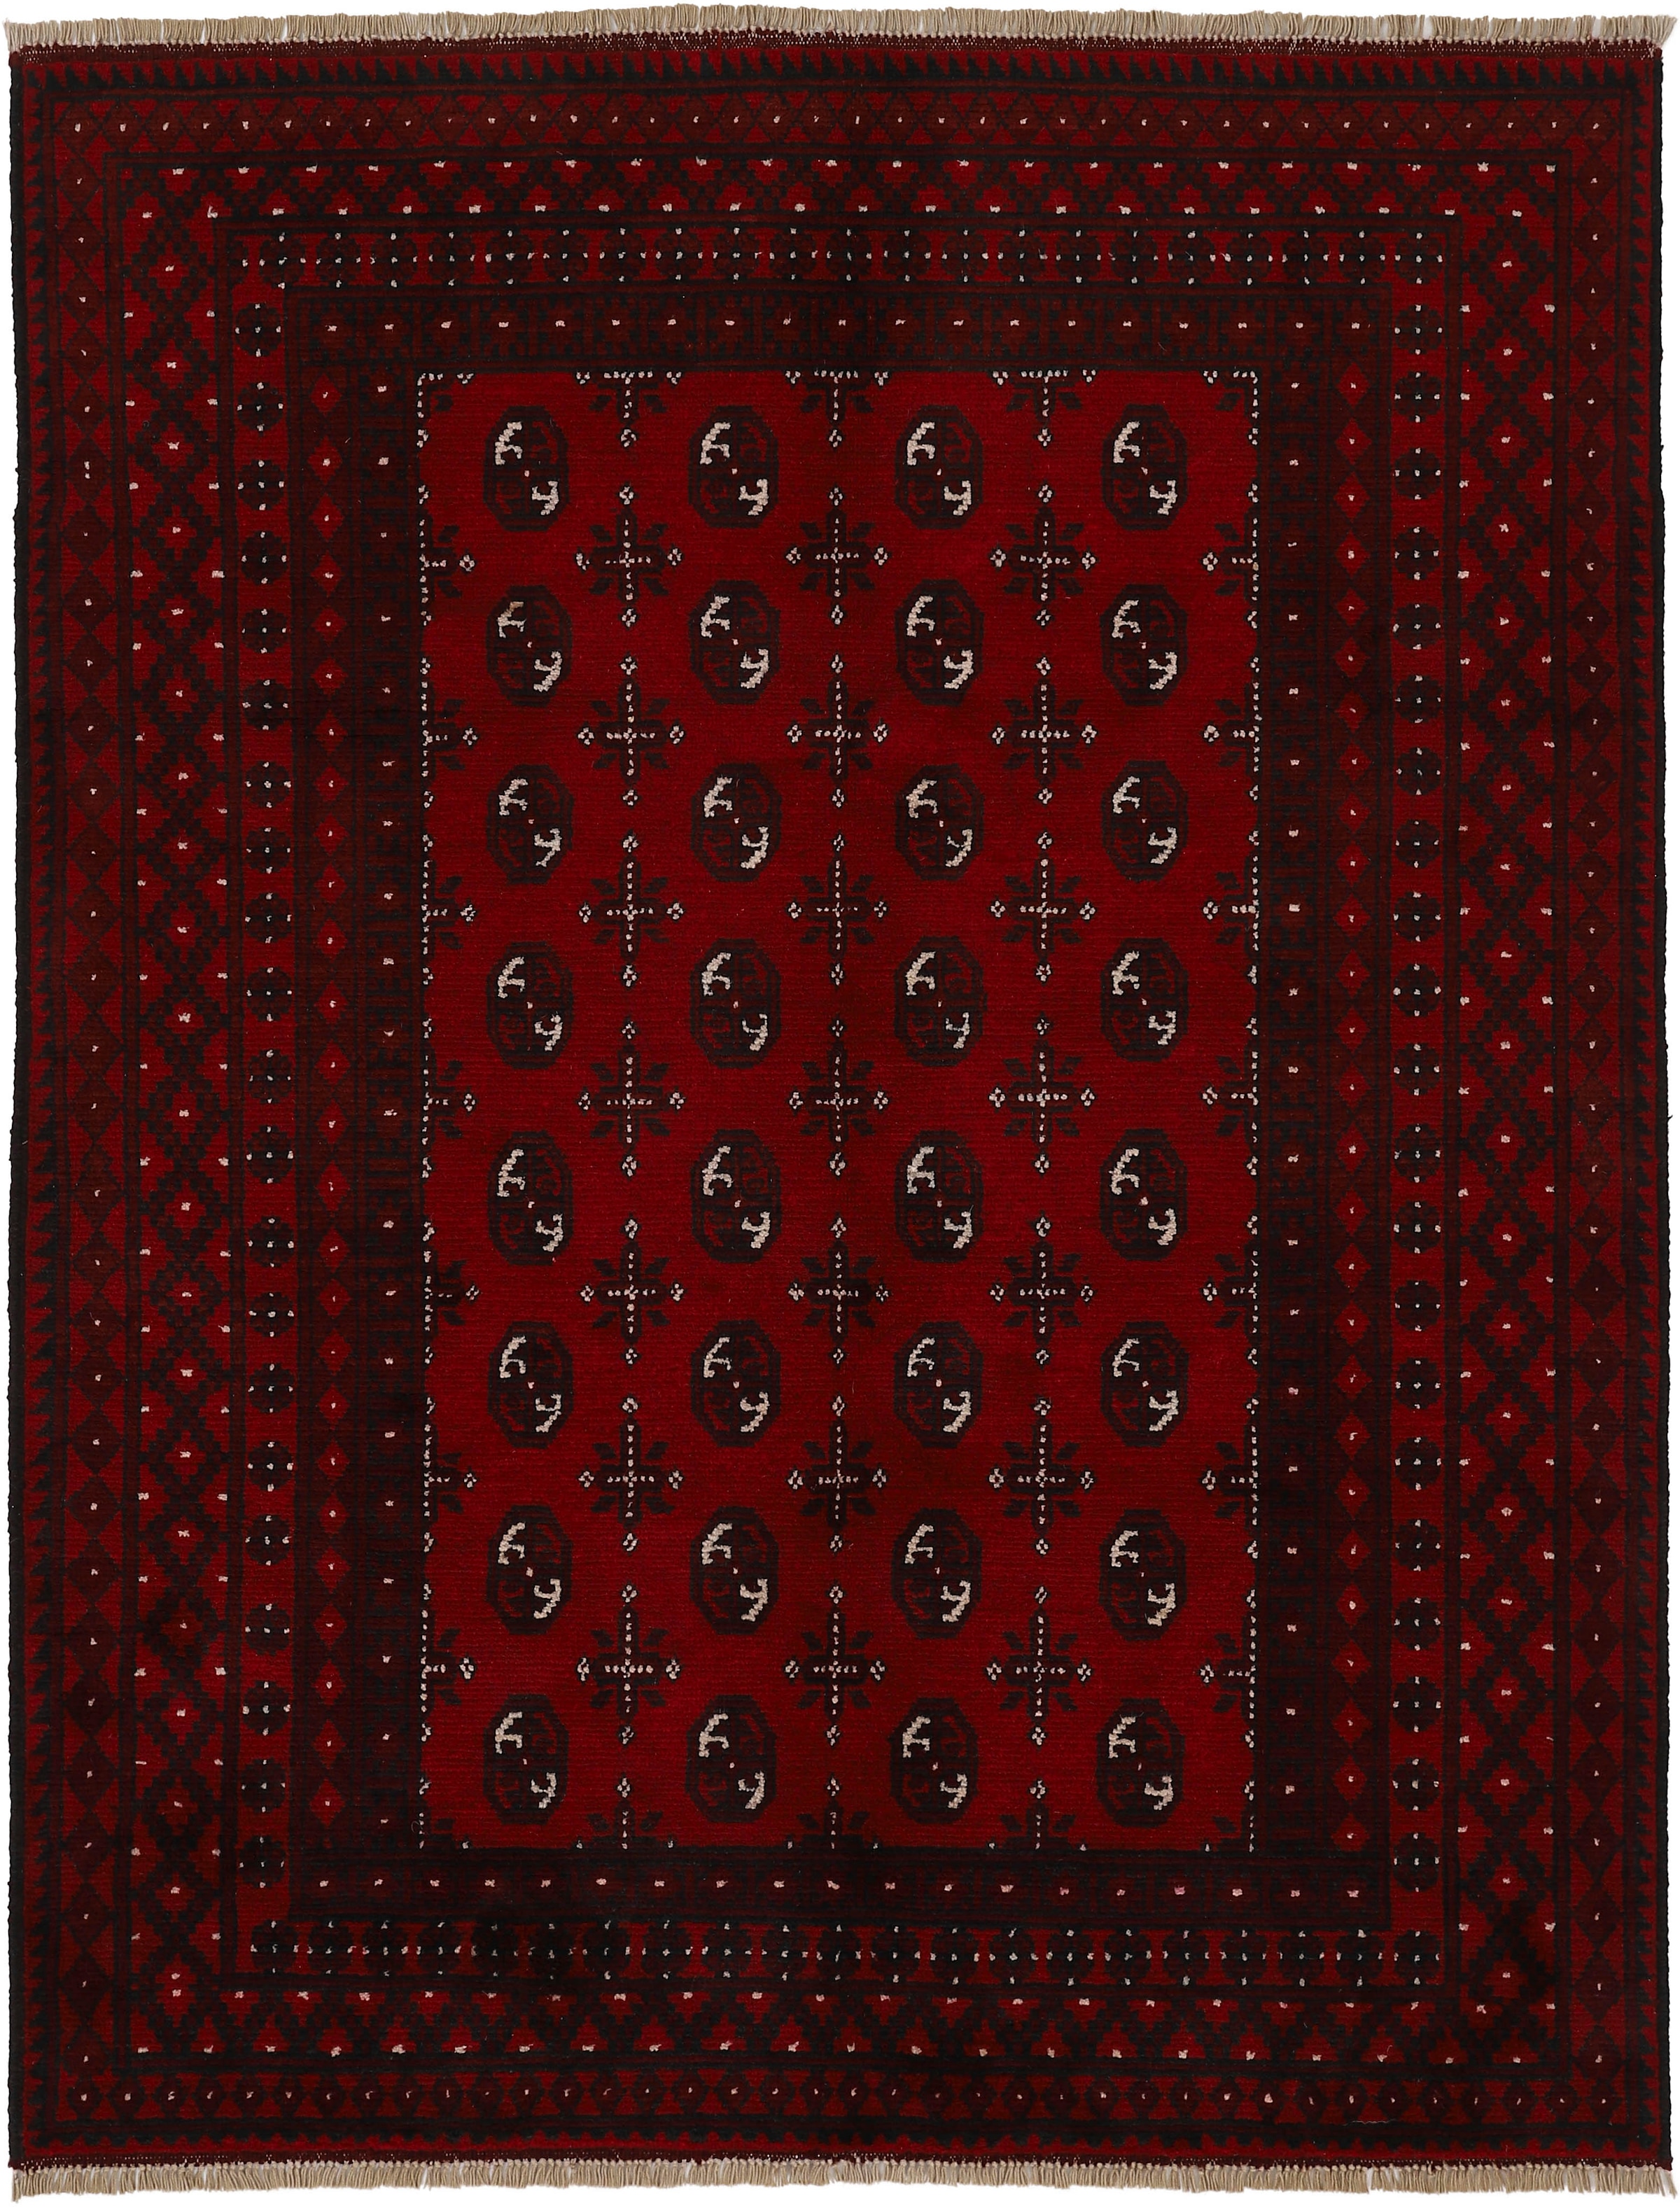 Woven Arts Orientteppich »Afghan Akhche Bokhara«, rechteckig, reine Schurwolle für ein warmes Raumklima, handgearbeitet